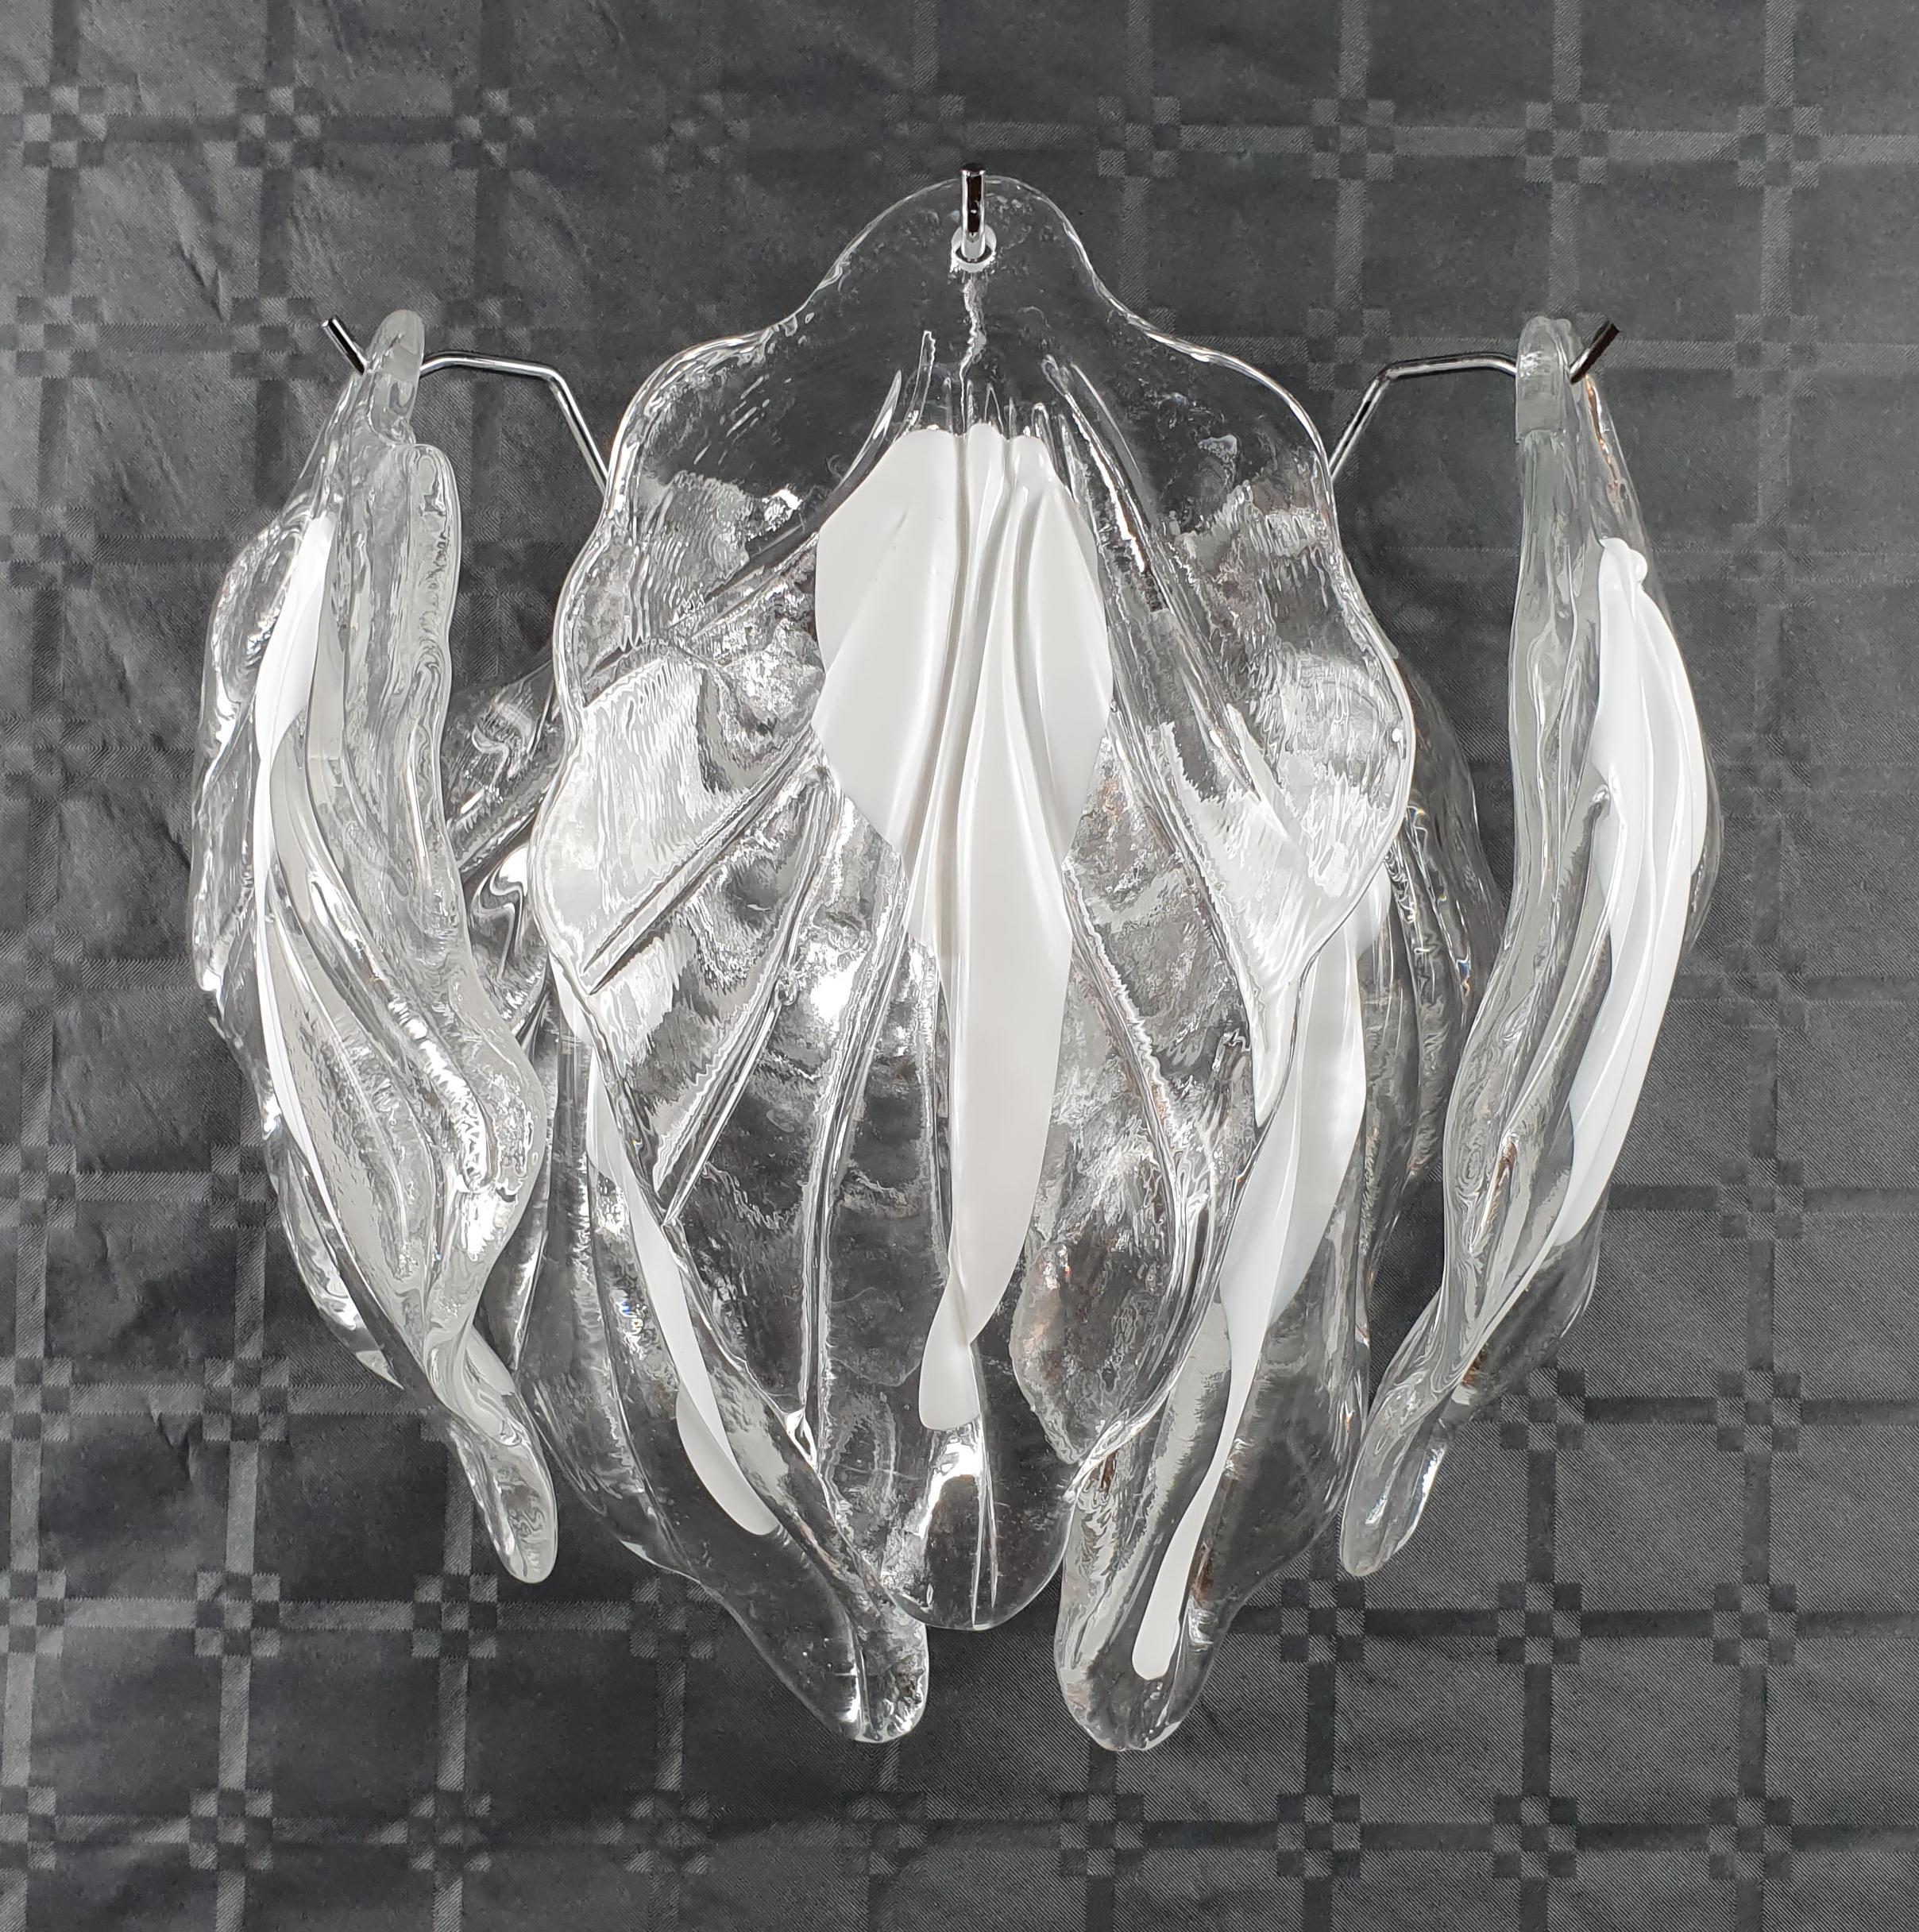 Italienische Wandleuchte mit klaren und milchig-weißen mundgeblasenen Murano-Glasblättern auf verchromtem Metallrahmen / inspiriert von Mazzega Made in Italy
Maße: Breite 12 Zoll, Höhe 14 Zoll
2 Leuchten / Typ E12 oder E14 / je max. 40W
Nur auf